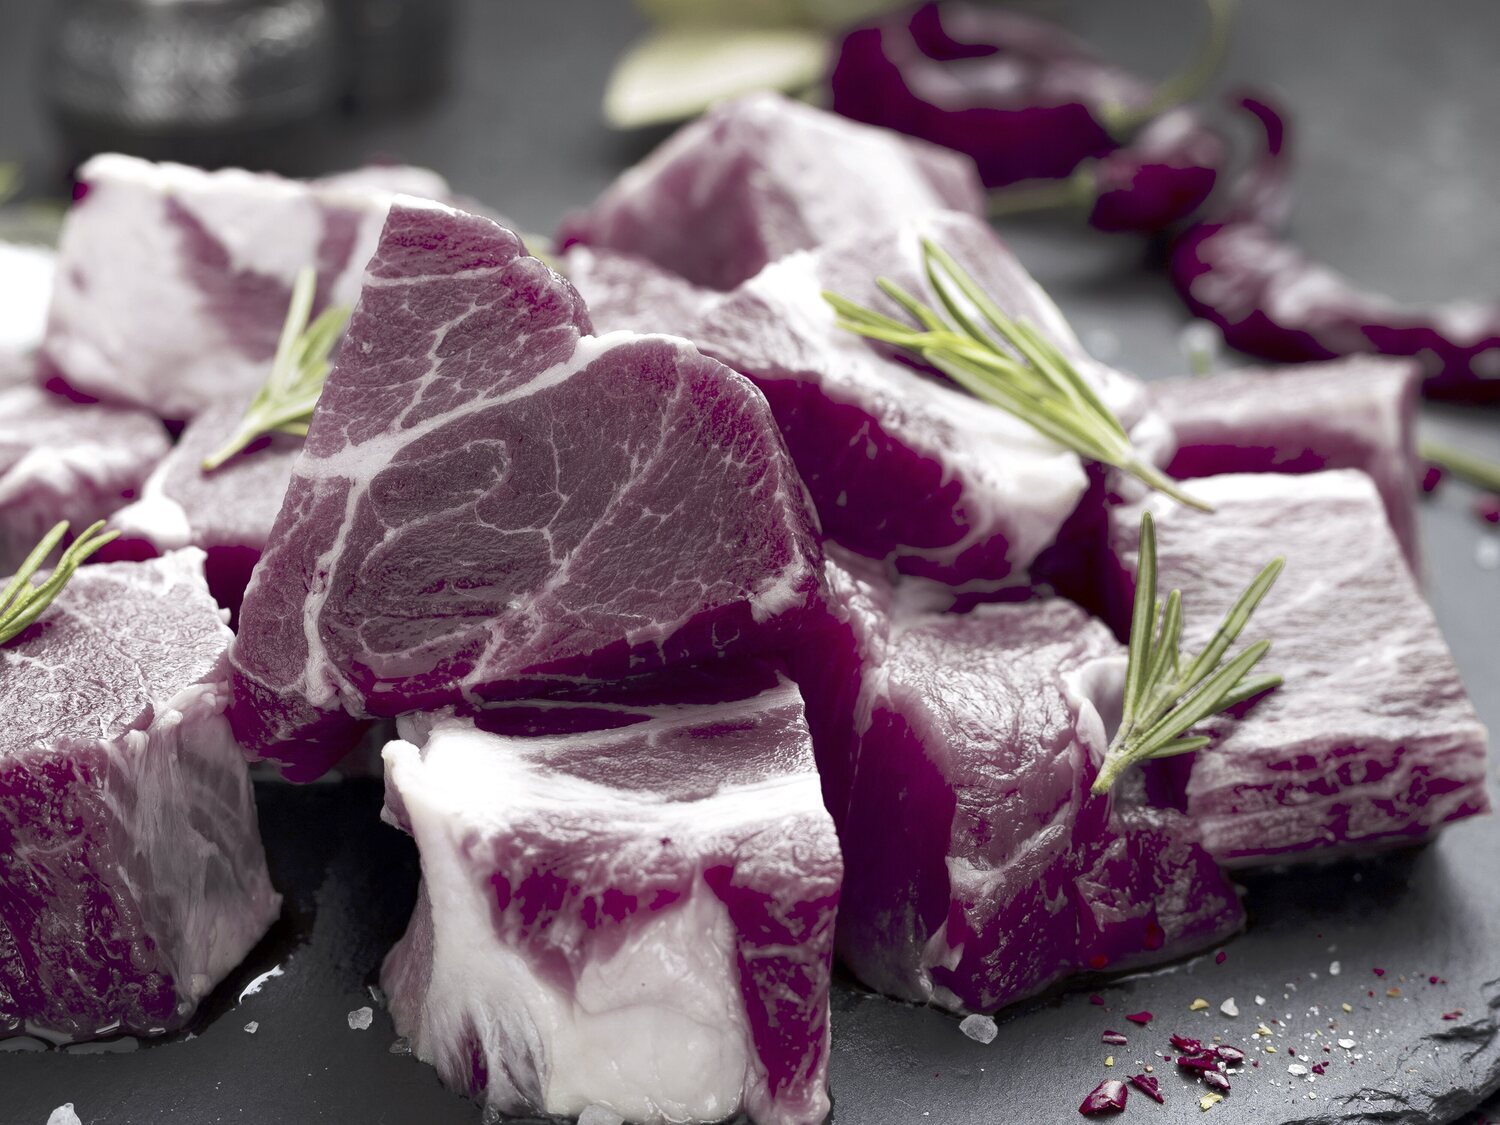 Alerta alimentaria: Sanidad pide no consumir esta carne de cerdo contaminada con listeria